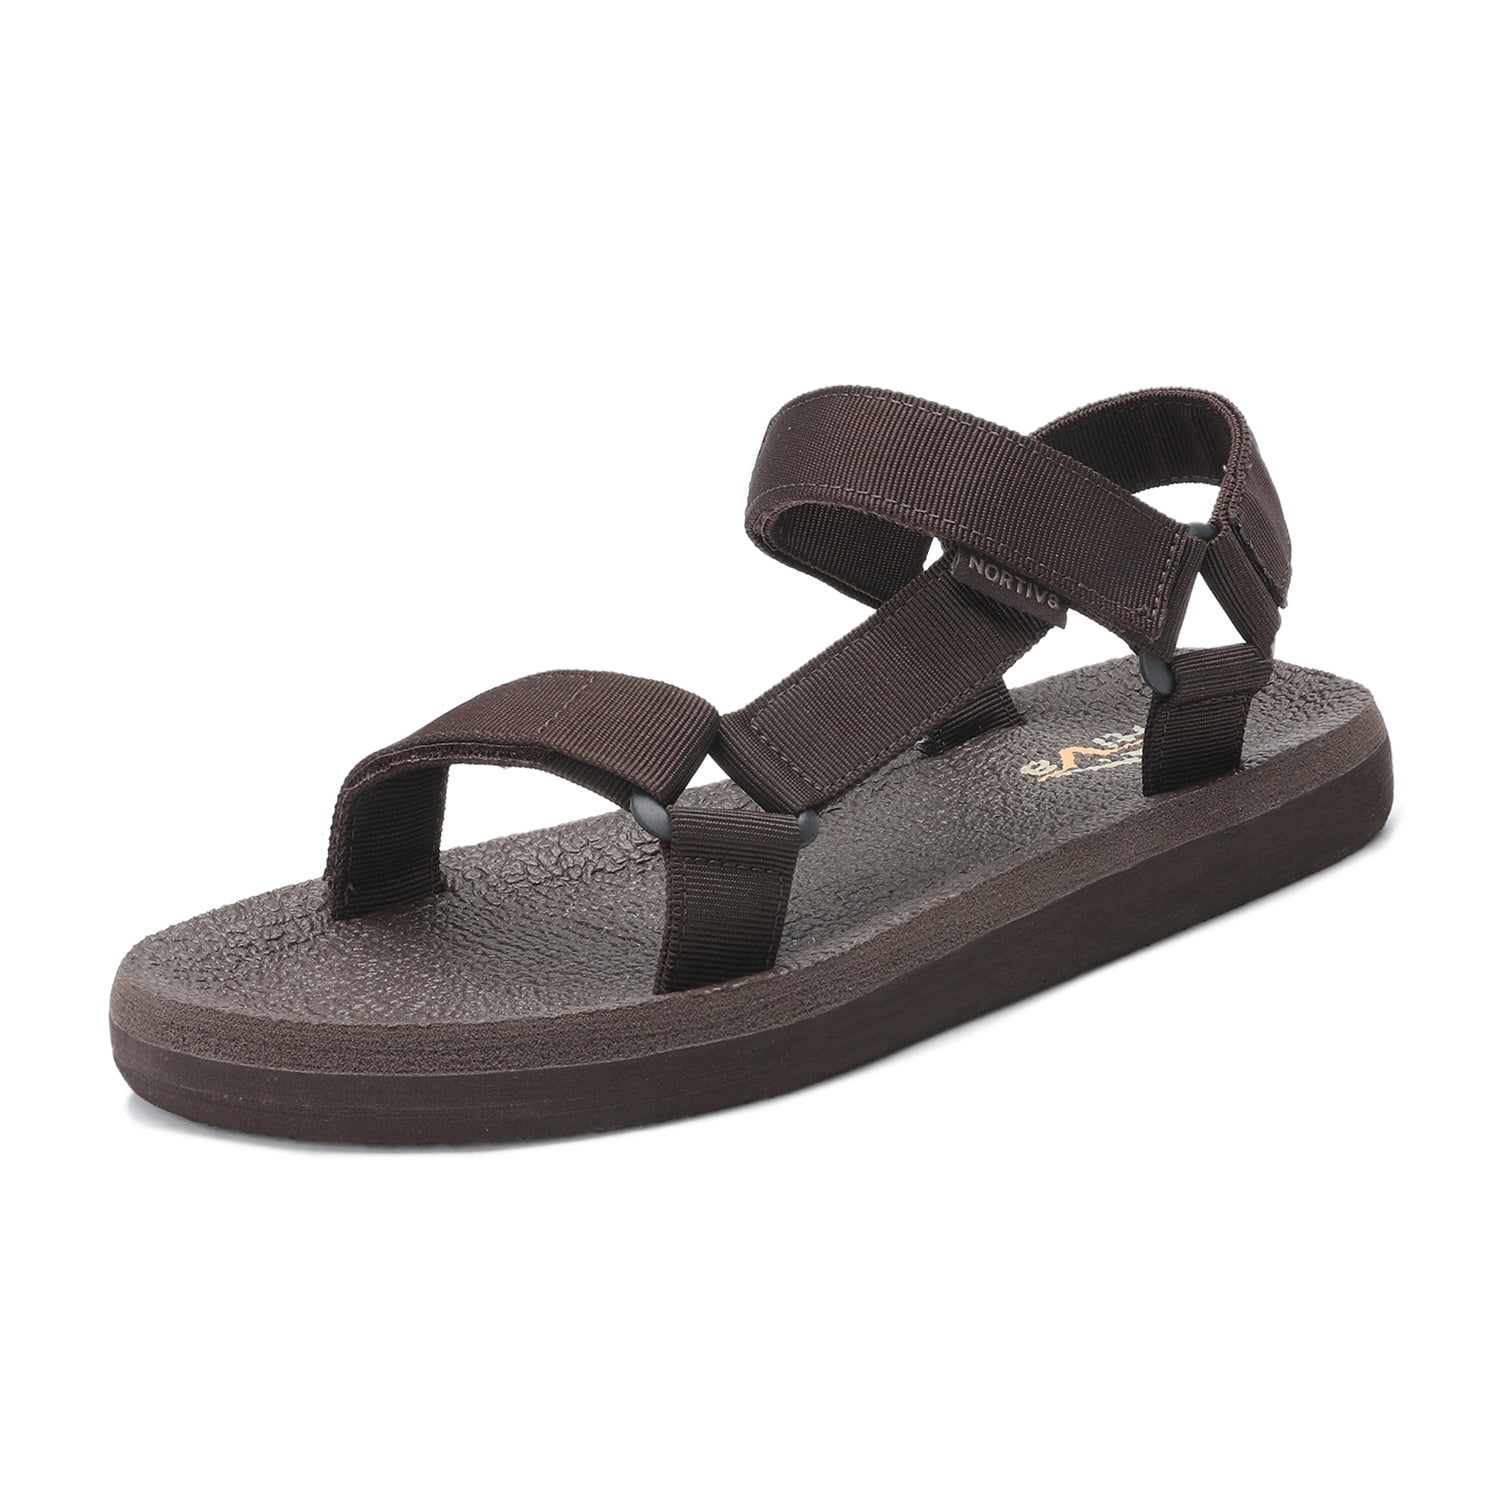 Men‘s Summer Sandals Casual Walking Beach Flip Flops Shoes Beach Slippers 8 9 10 